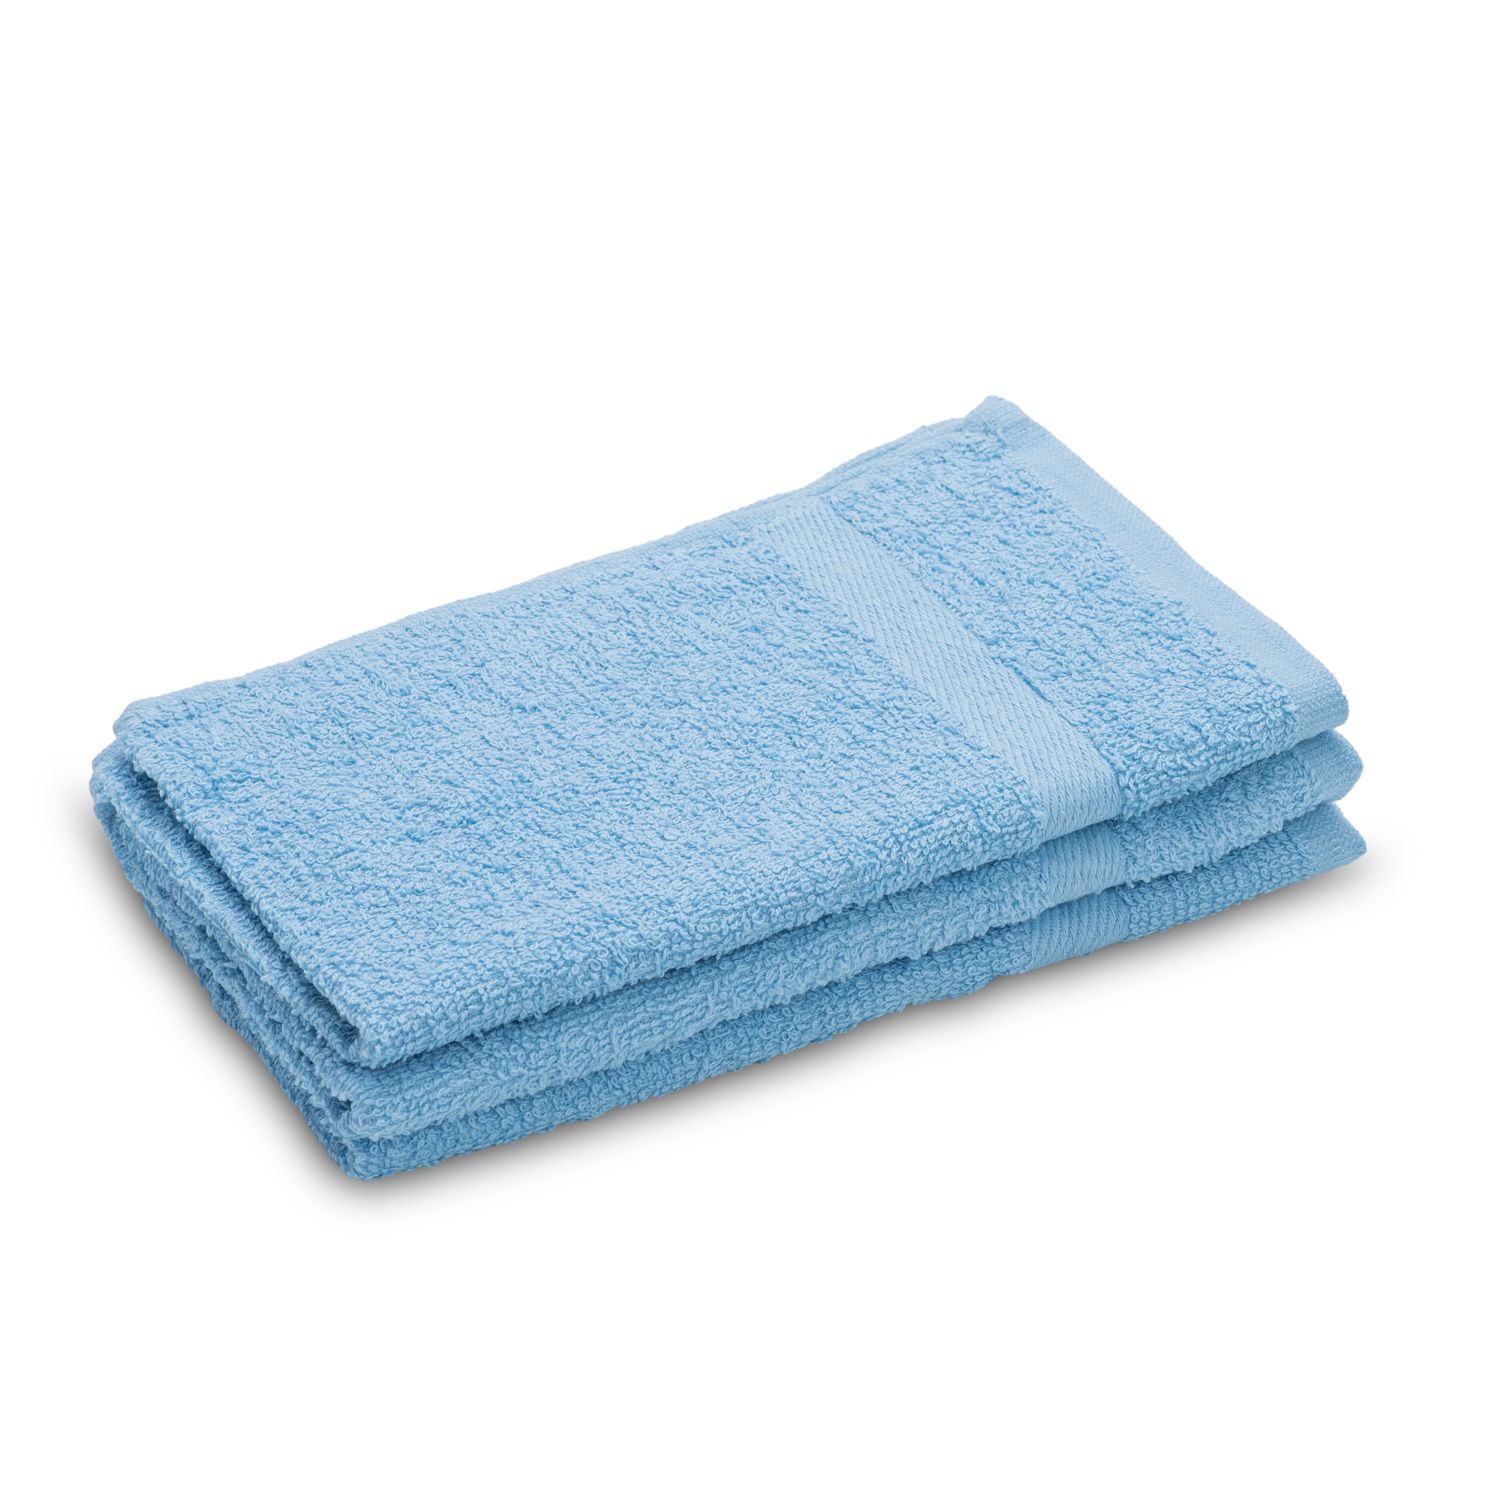 AKCE Dětský ručník Basic modrý 30x30 cm - Výprodej Povlečení